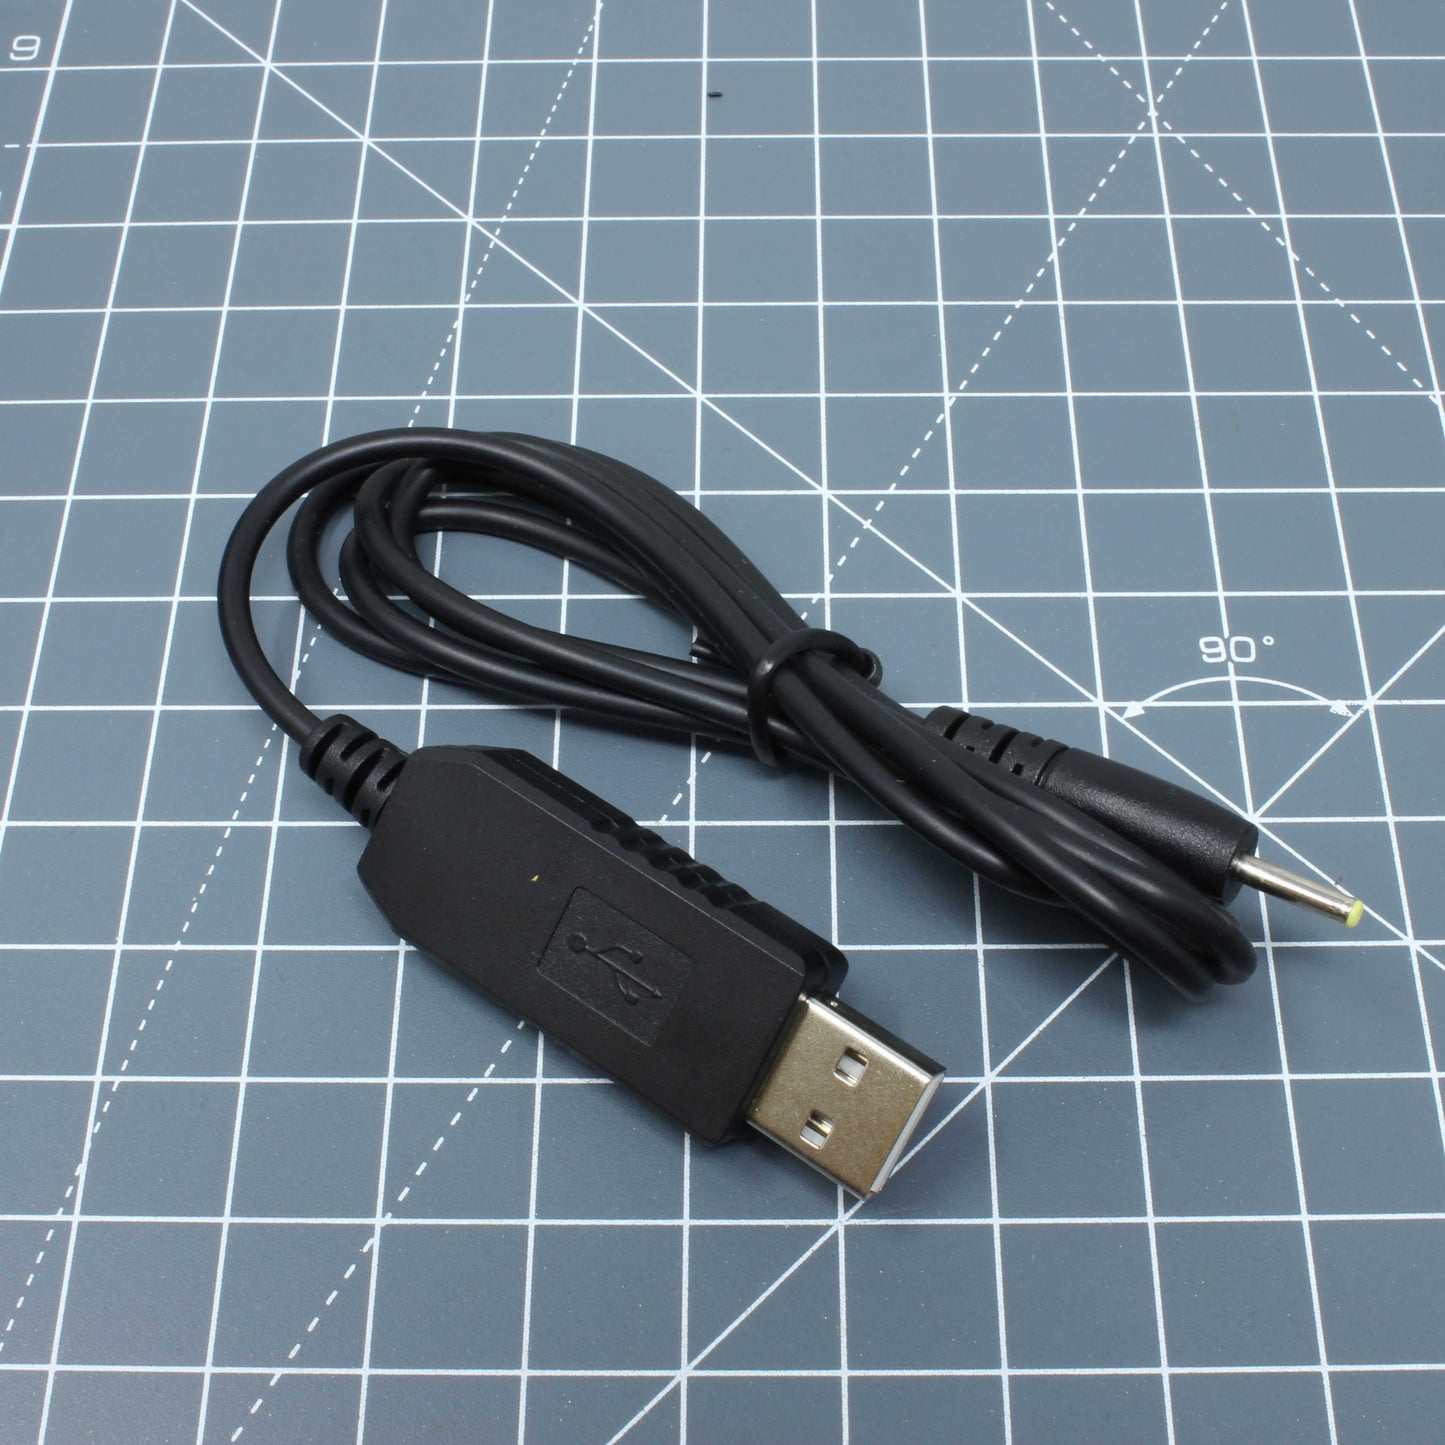 Game Boy Color/Pocket/Light - Parts - 3.3V USB Cable